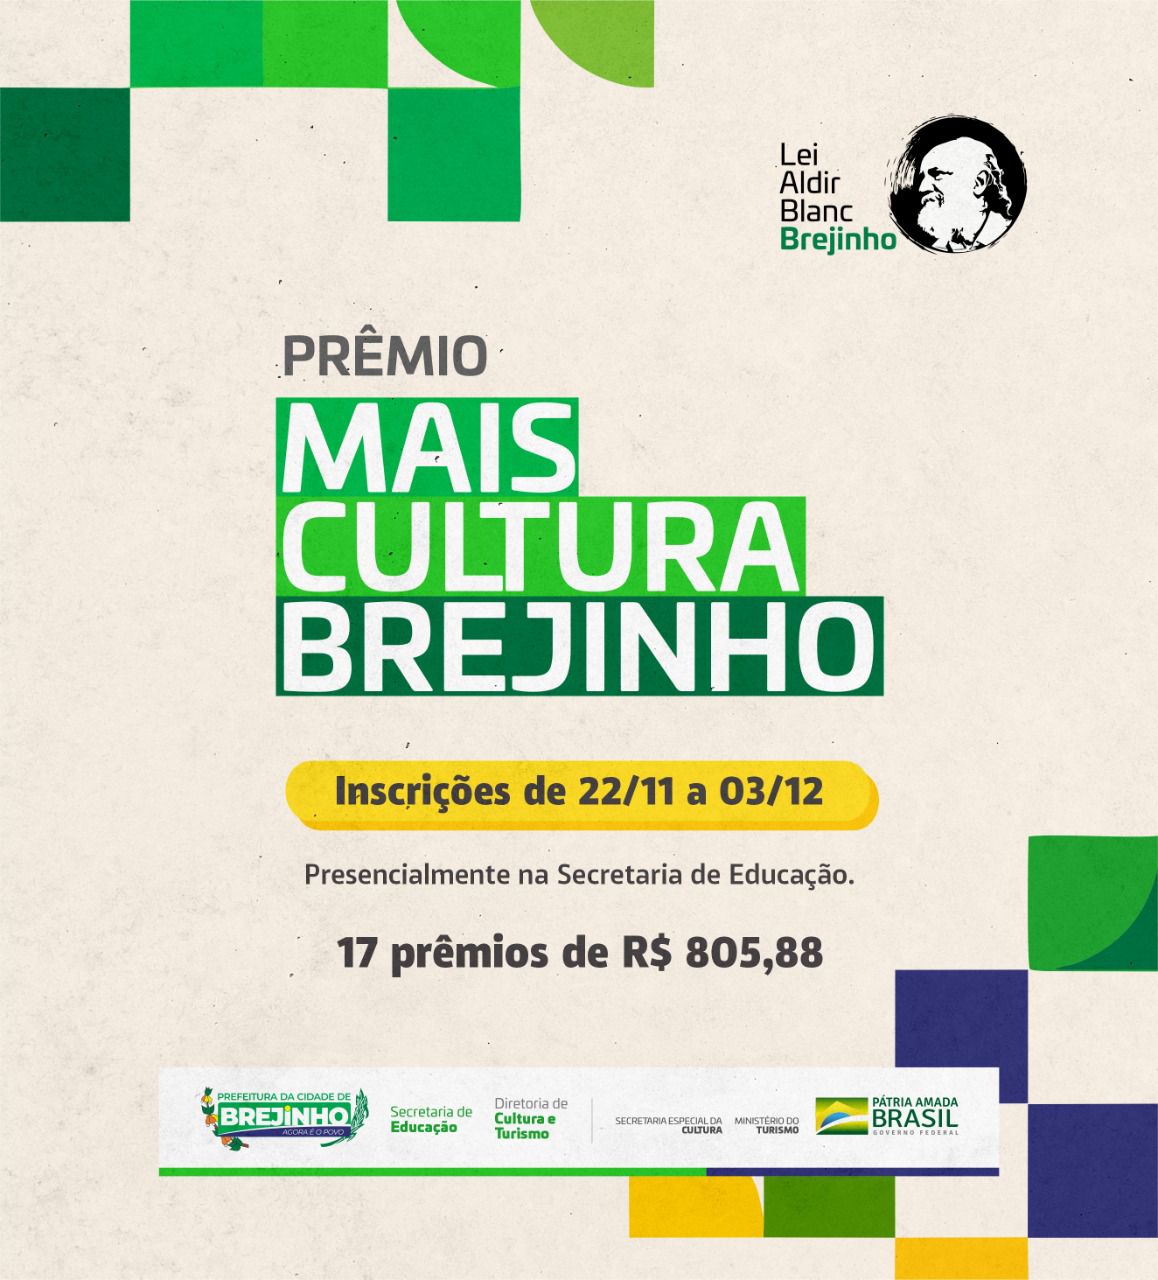 Inscrições para o Prêmio Mais Cultura Brejinho seguem até o dia 03 de dezembro